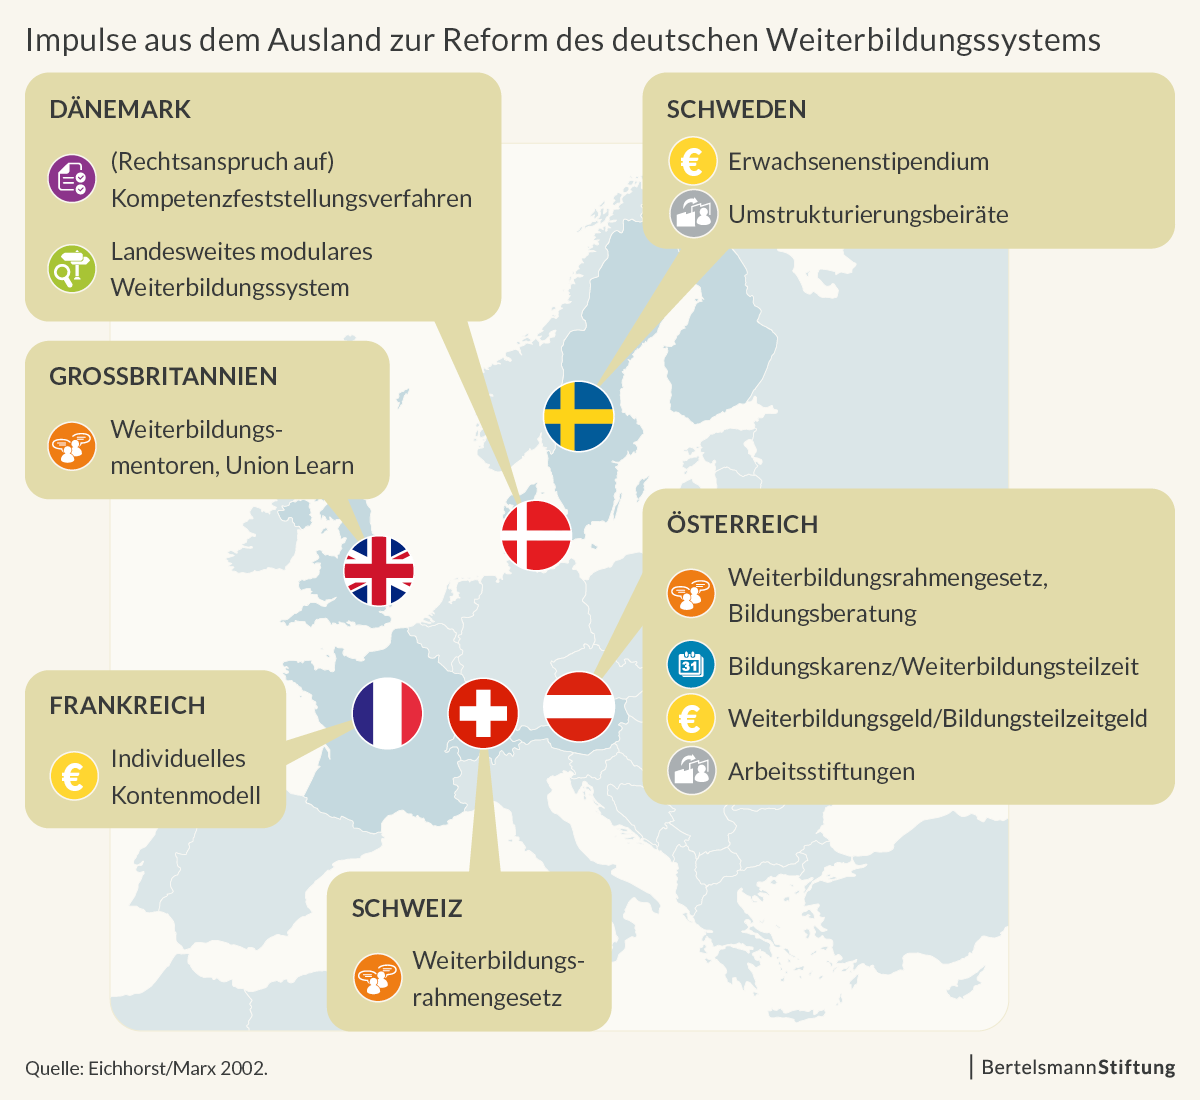 Impulse aus dem Ausland zur Reform des deutschen Weiterbildungssystems